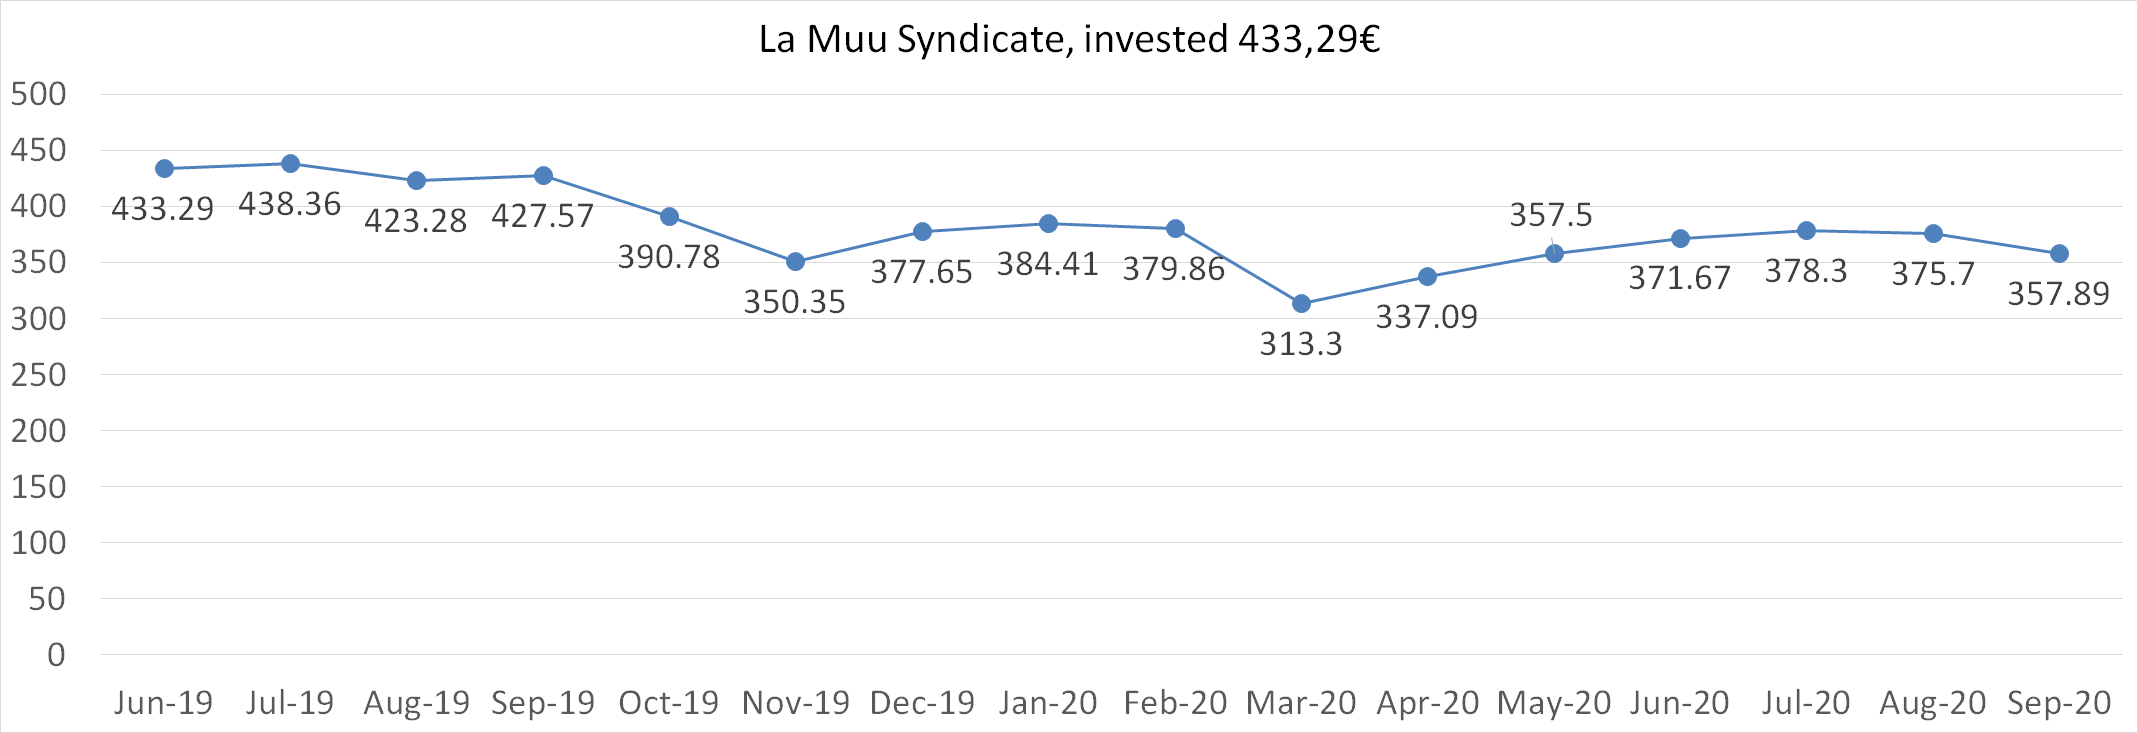 La Muu syndicate worth september 2020